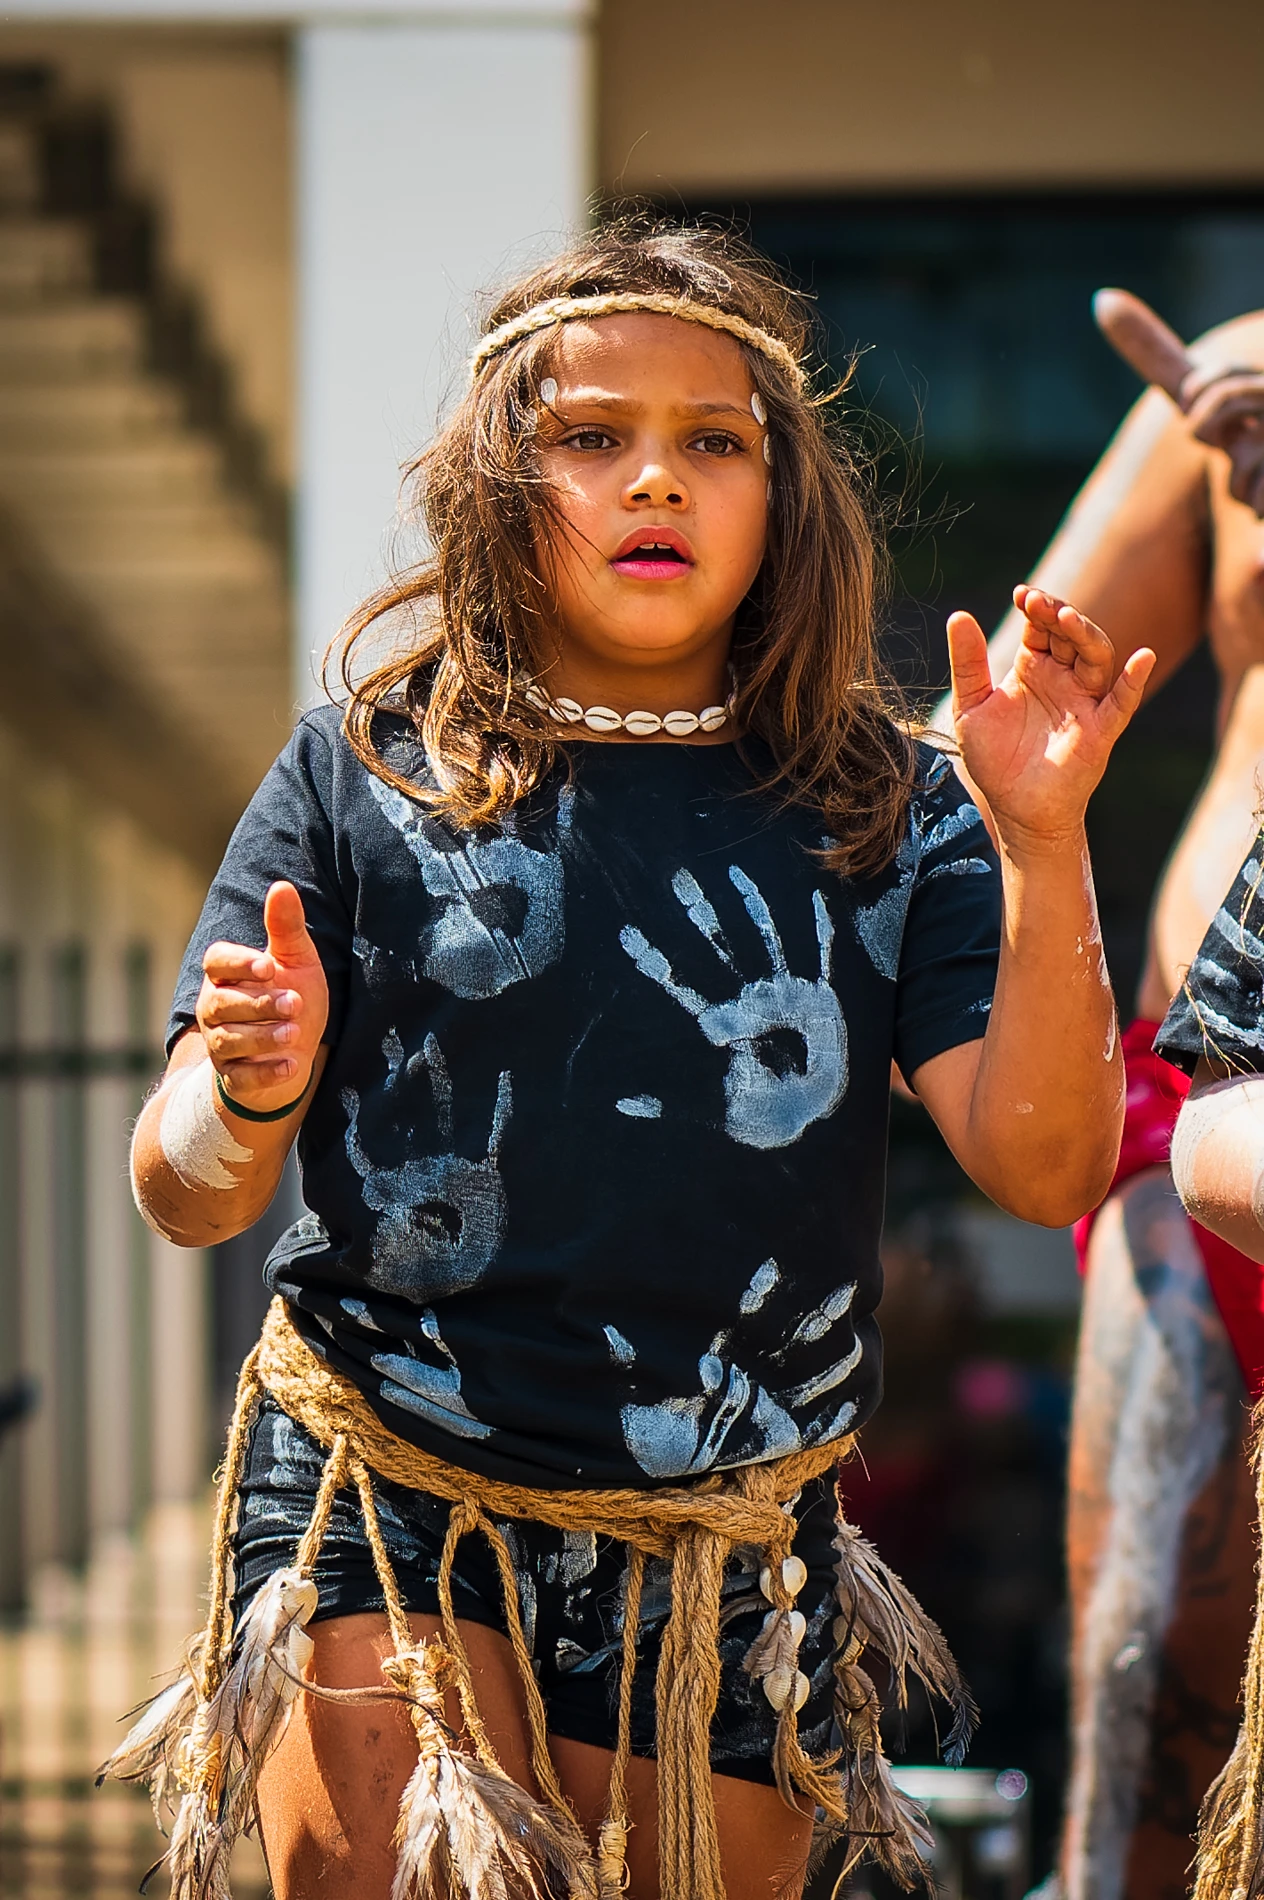 Galleries Culture Mix Aboriginal Little Girl Dance